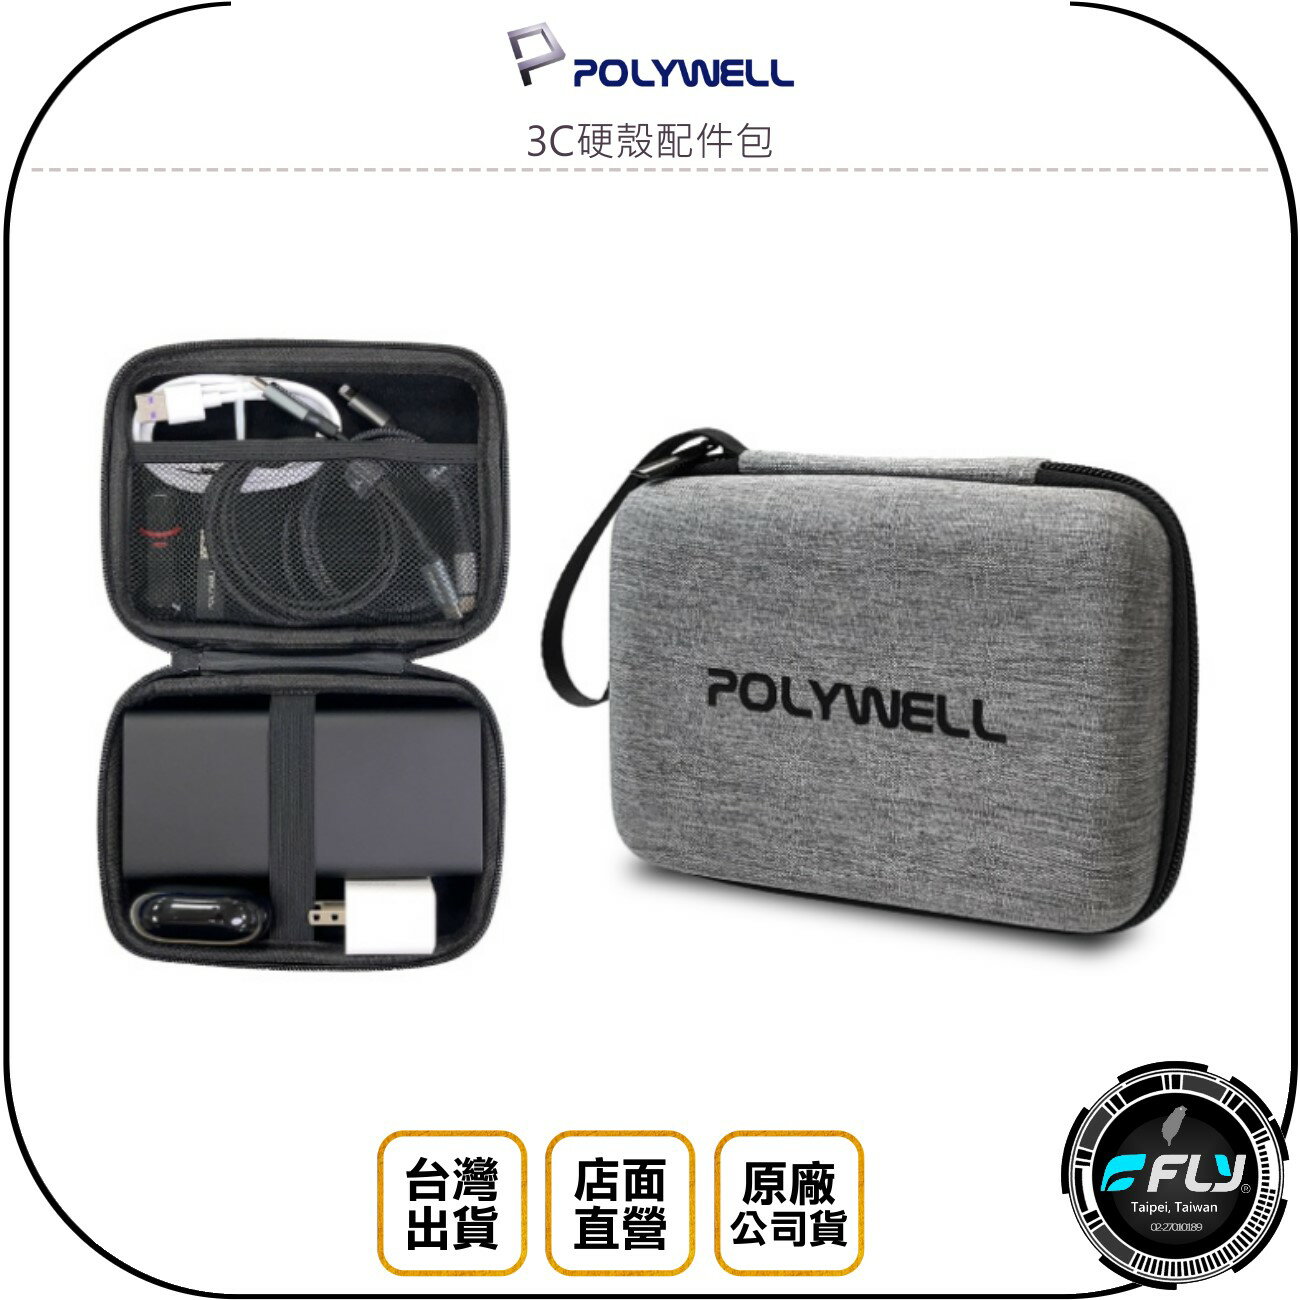 《飛翔無線3C》POLYWELL 寶利威爾 3C硬殼配件包◉公司貨◉旅遊收納包◉隨身小物盒◉拉鍊攜帶包